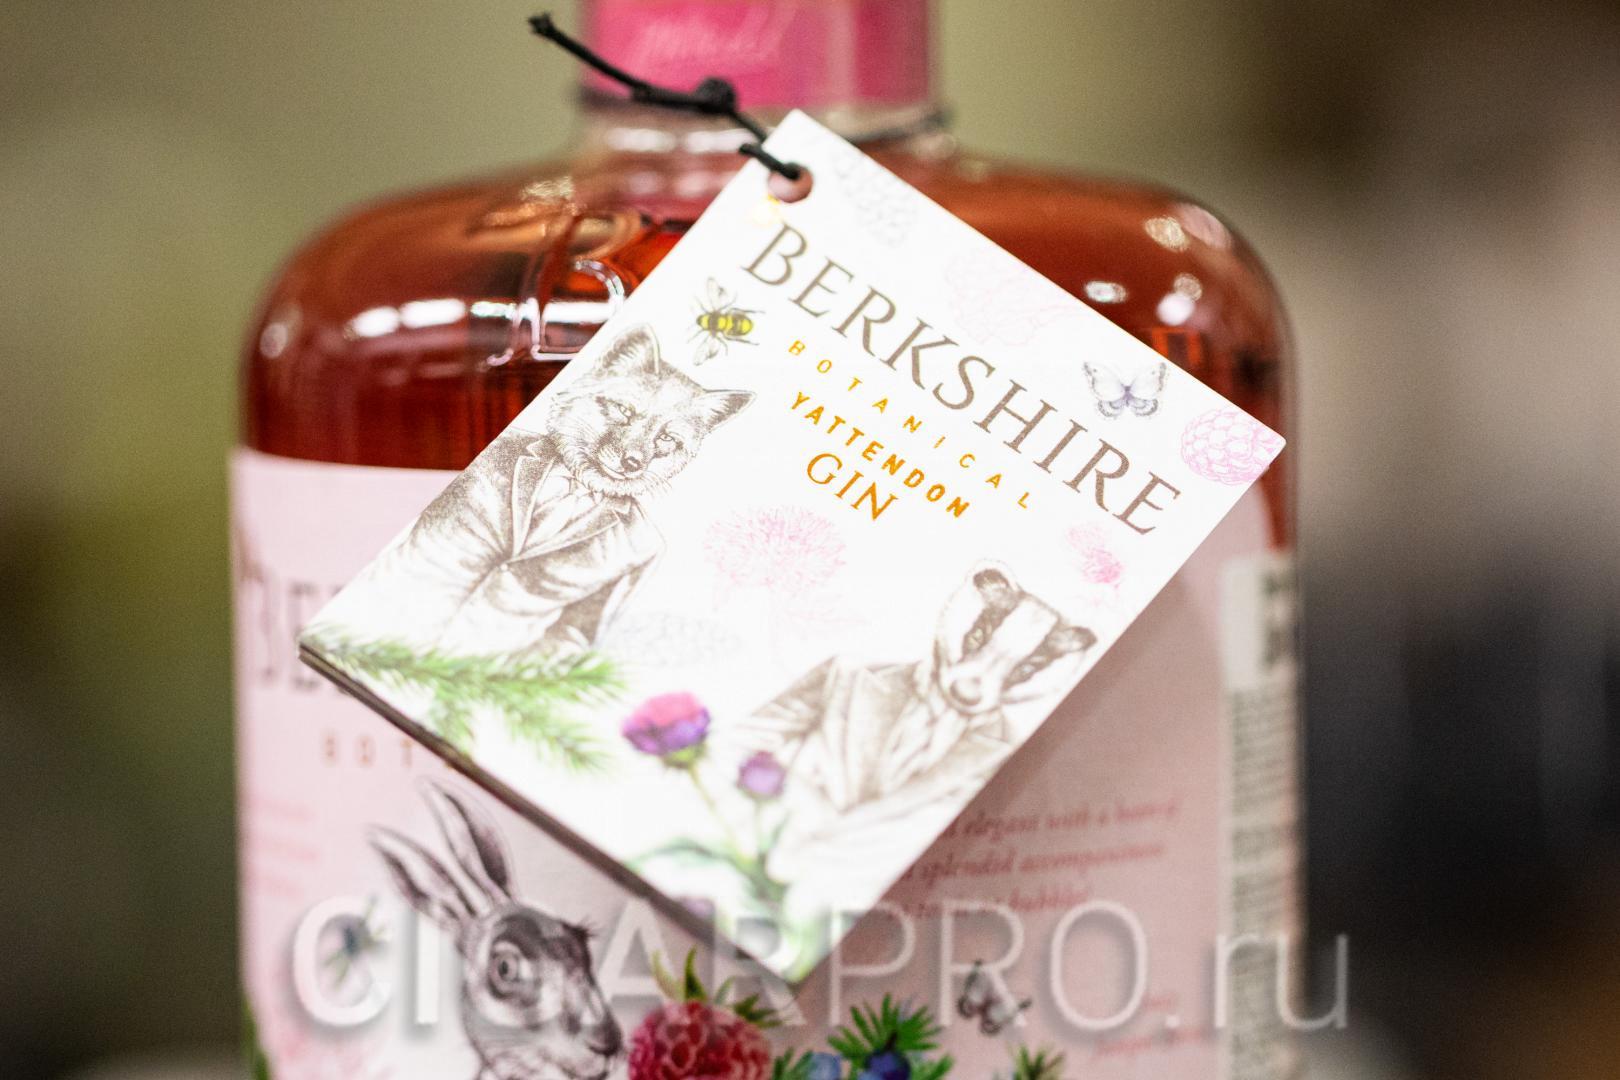 бутлет на бутылке джина Berkshire Rhubarb Paspberry Gin